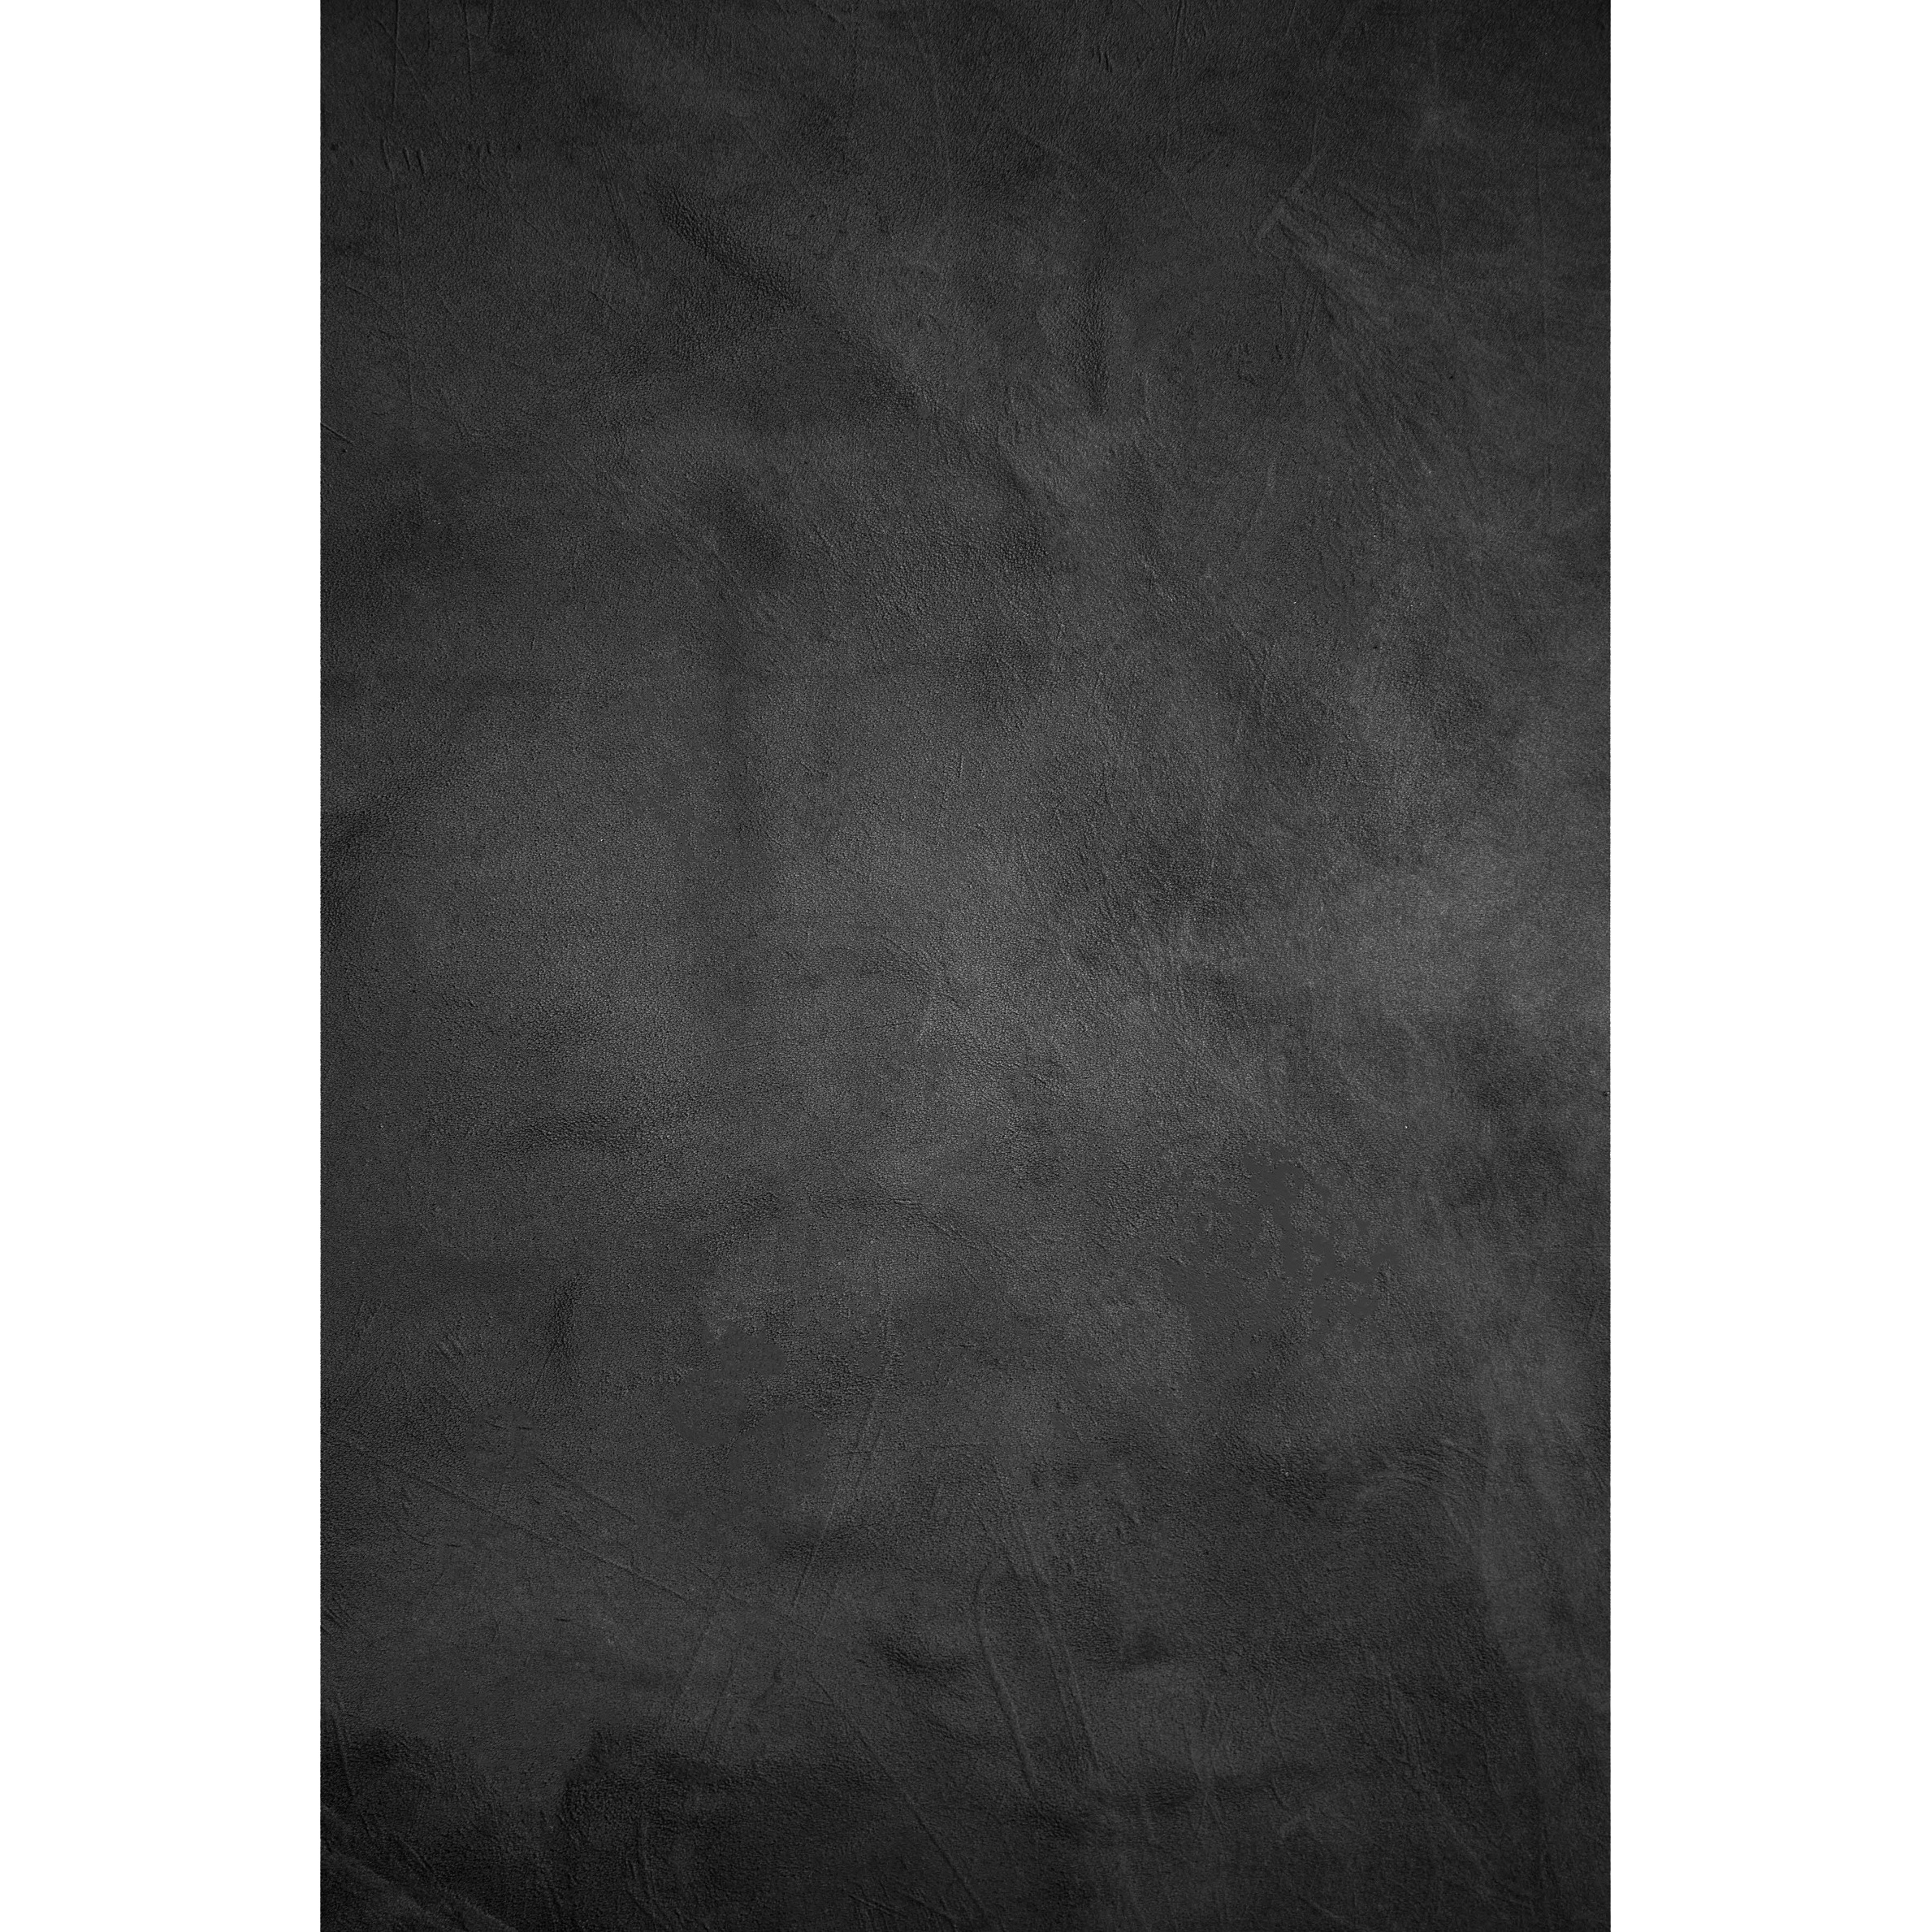 Fondo de Tela BRESSER con Estampado fotográfico 80 x 120 cm - Negro